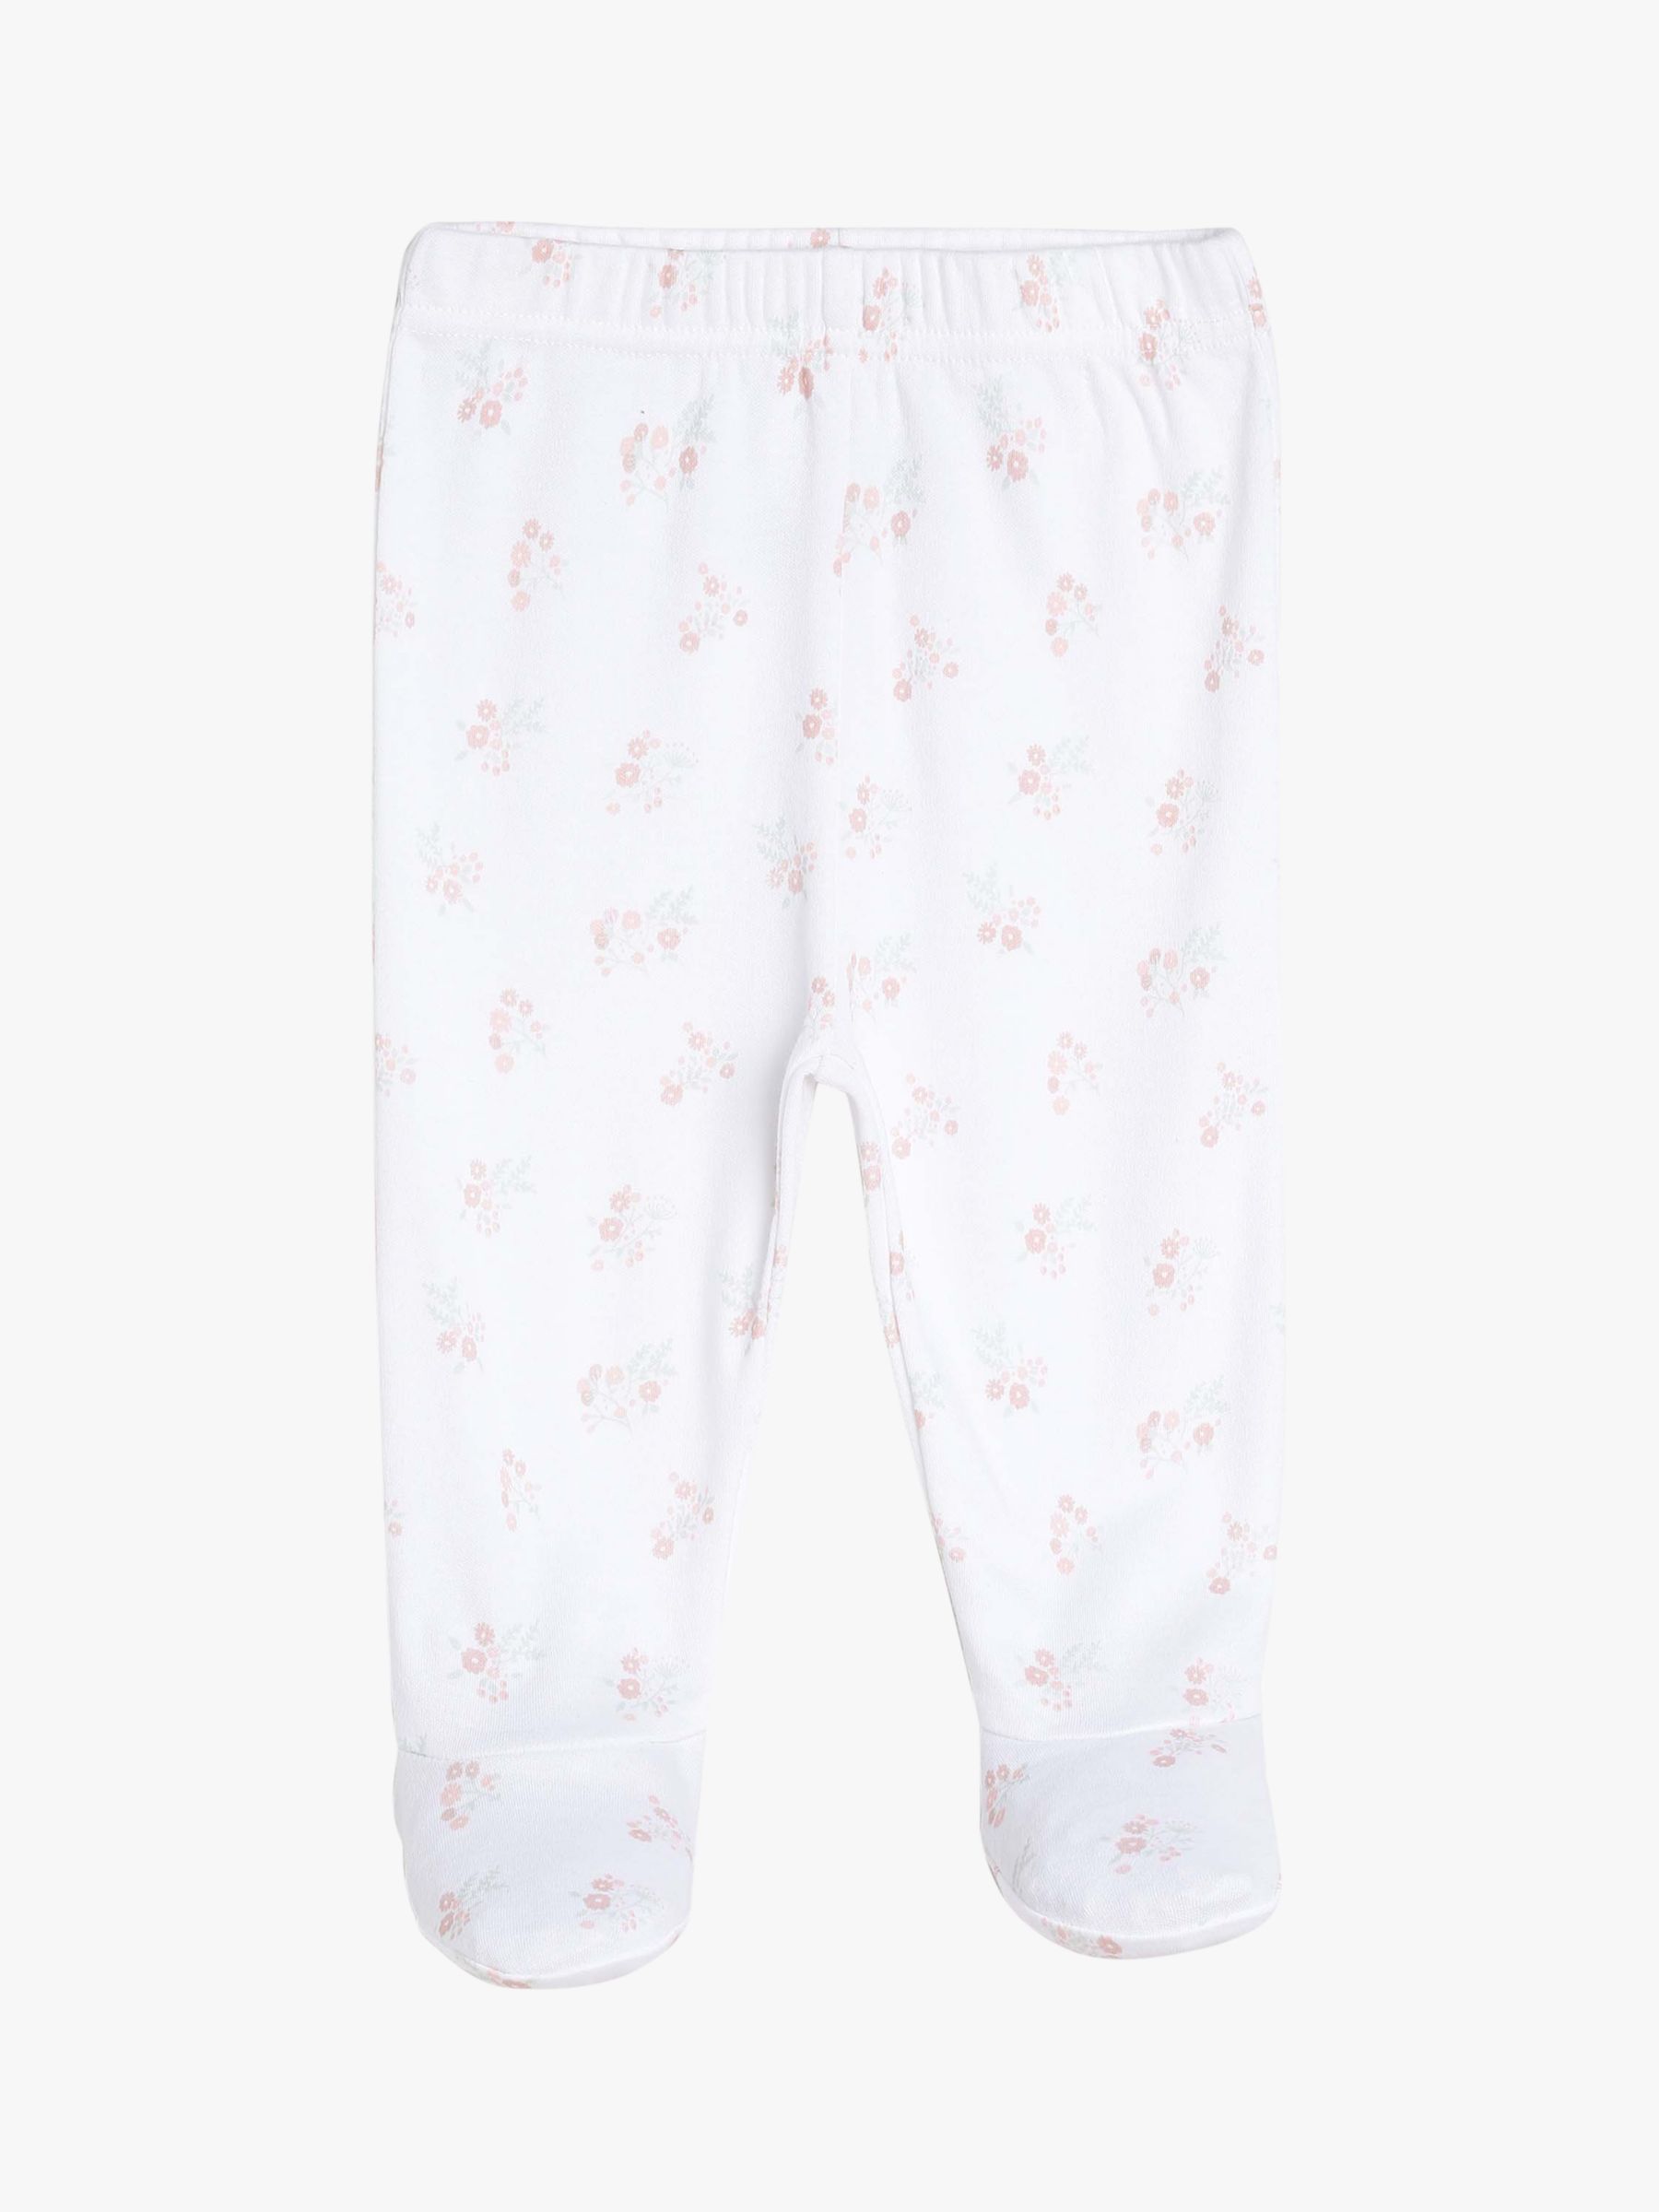 Mini Cuddles Baby Floral Applique Sleepsuits, Hat & Gloves Set, White/Pink, Newborn